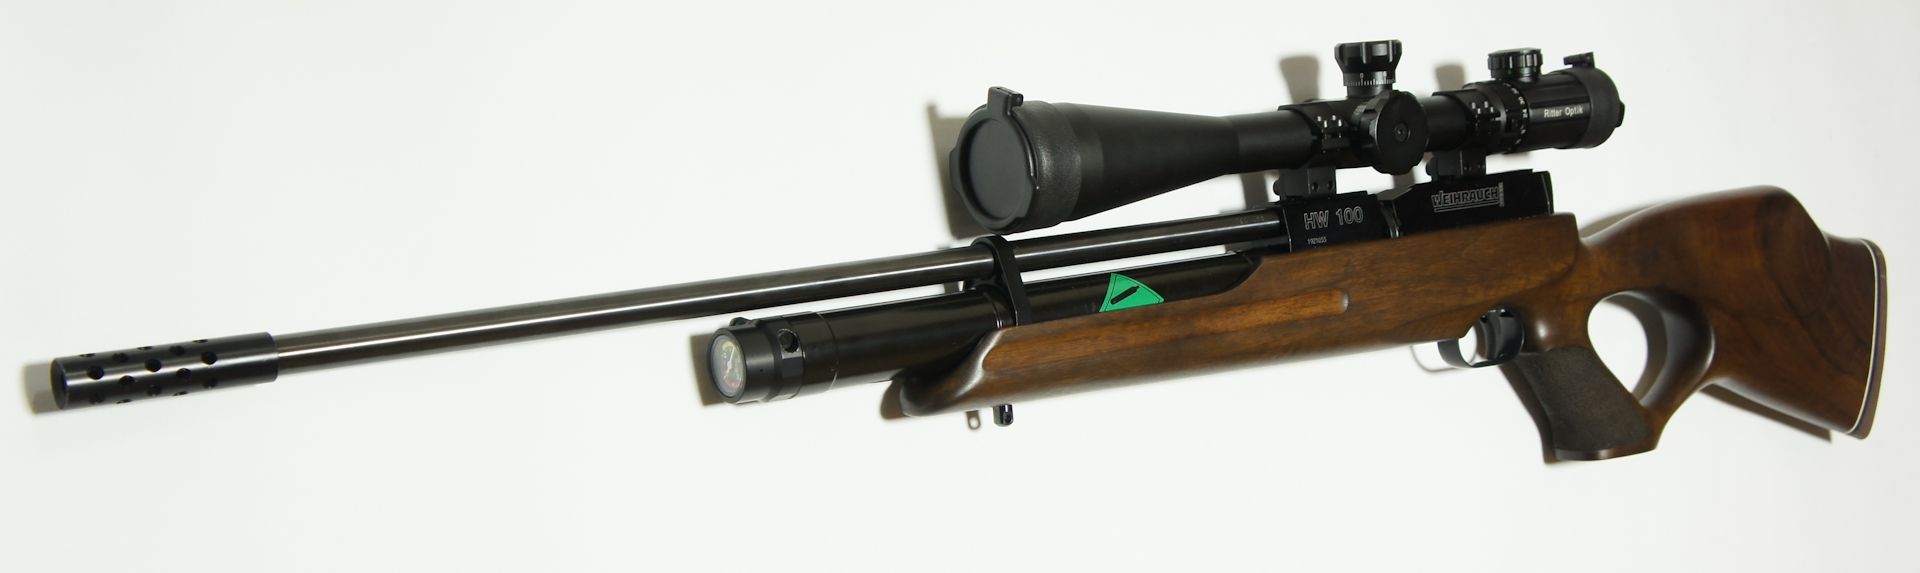 Das Zielfernrohr 10-40x44 ist mit seinem Scharfschützenabsehen ein besonderer Augenschmaus und ergänzt dieses Luftgewehr hervorragend.